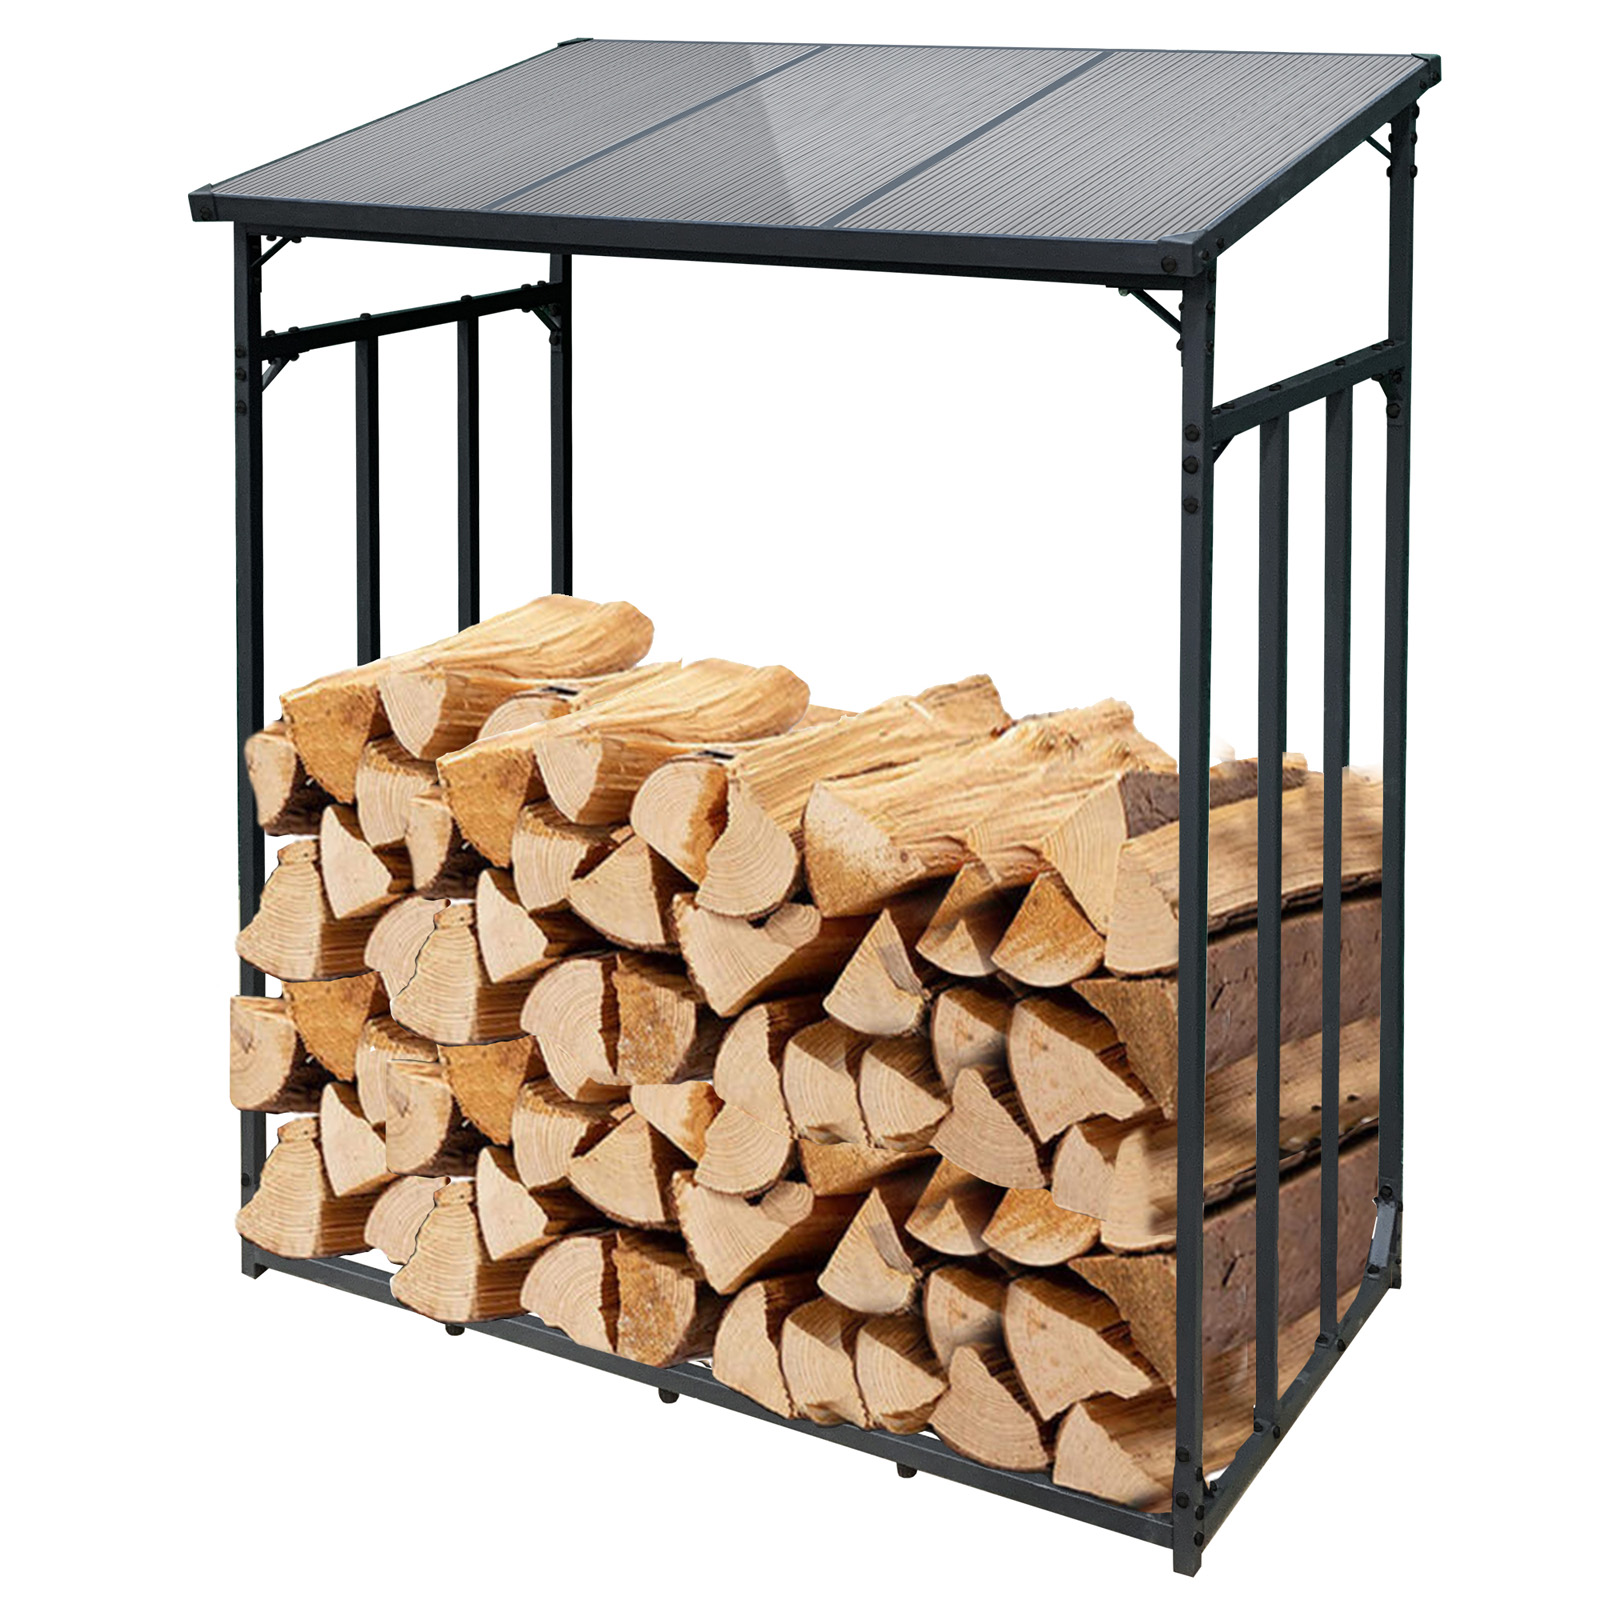 Abri de stockage en bois pour bûches toit incliné et étagère